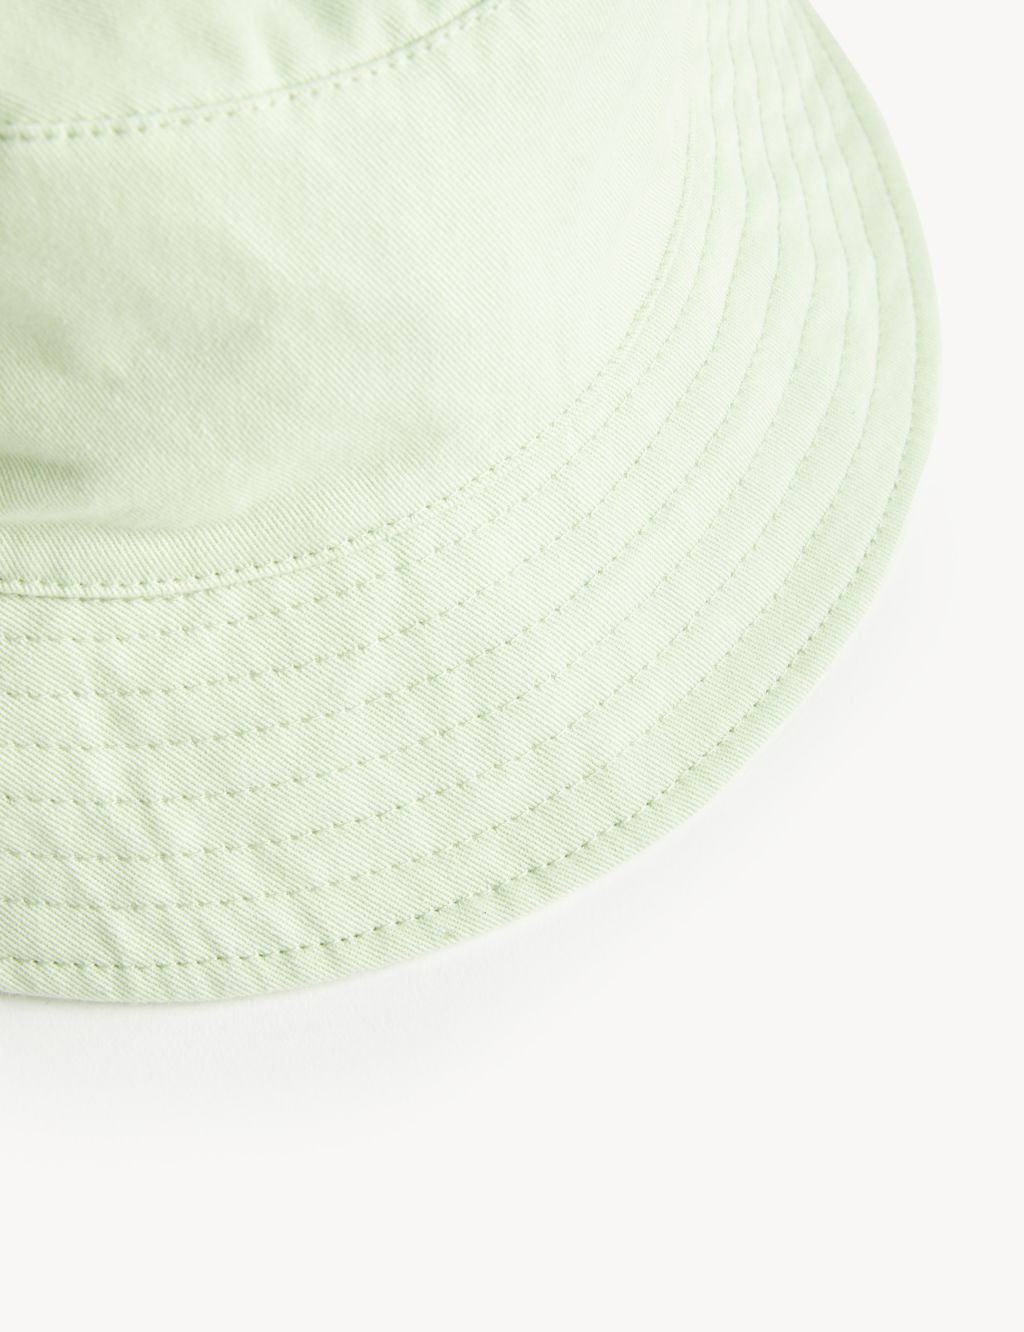 Kids' Pure Cotton Plain Sun Hat (0-13 Yrs) image 3